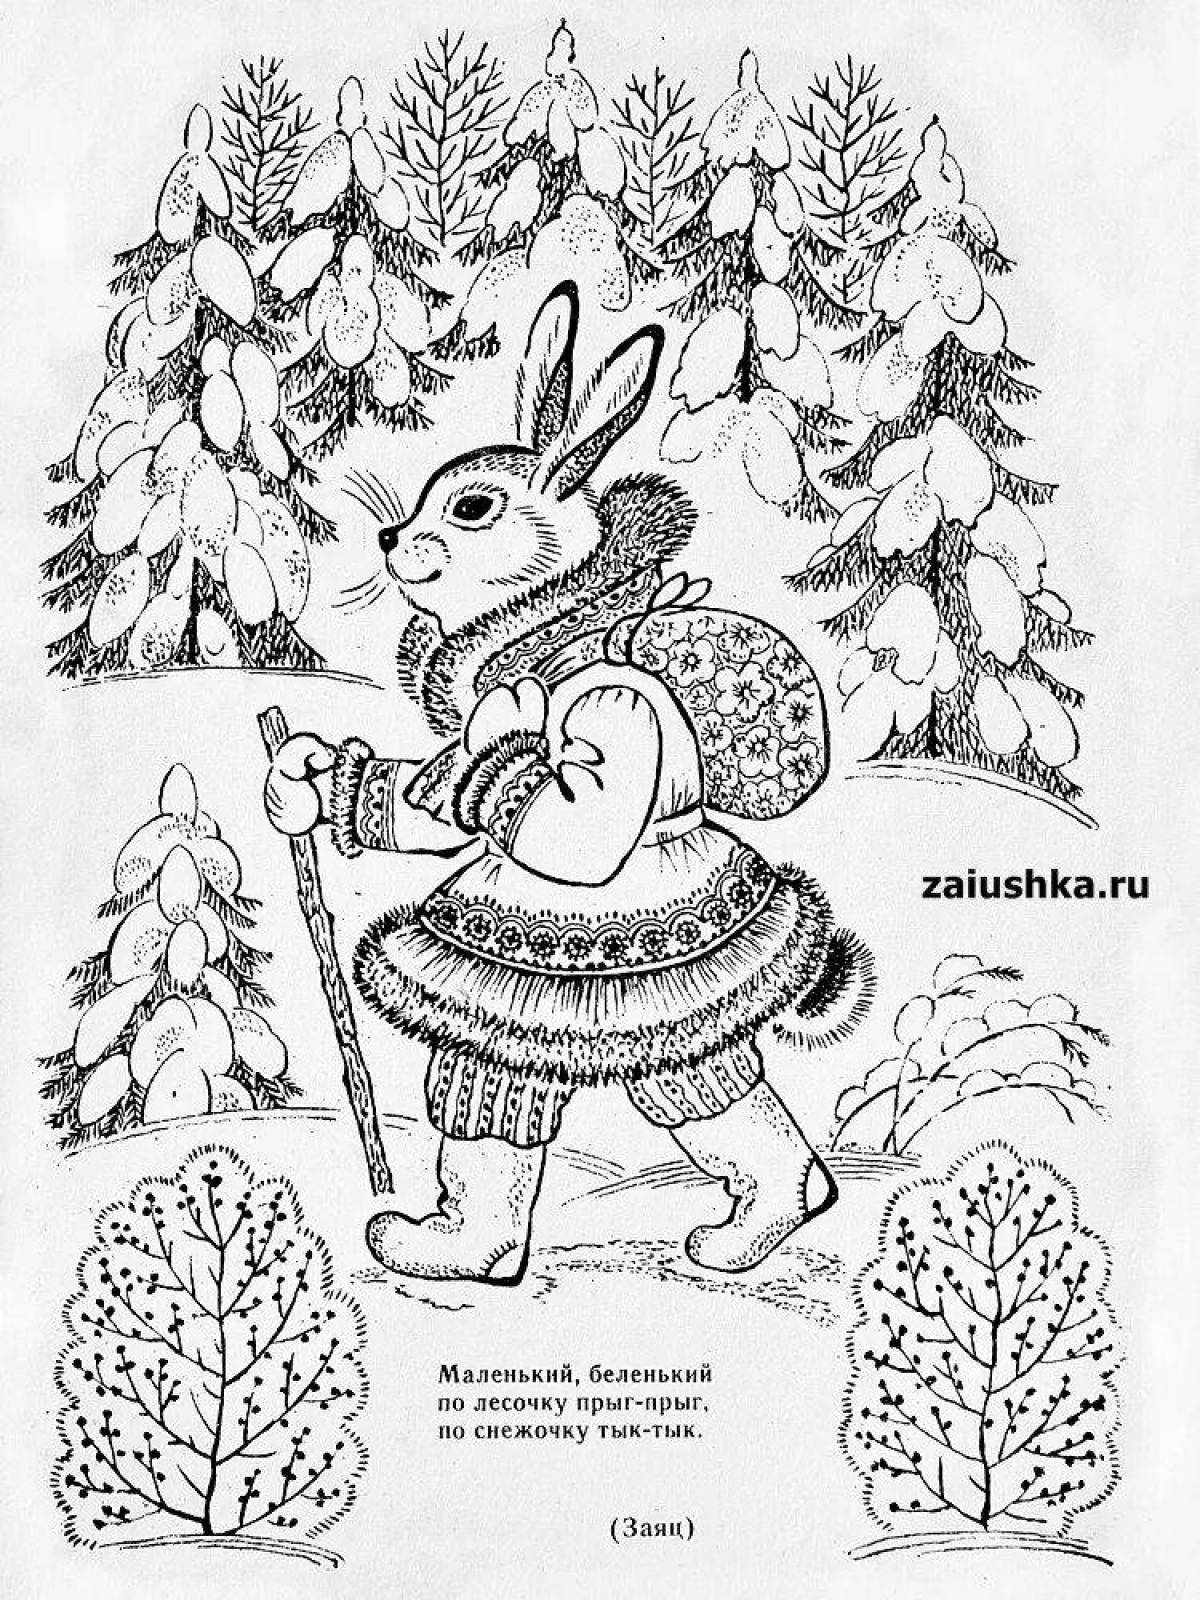 Winter hare in winter